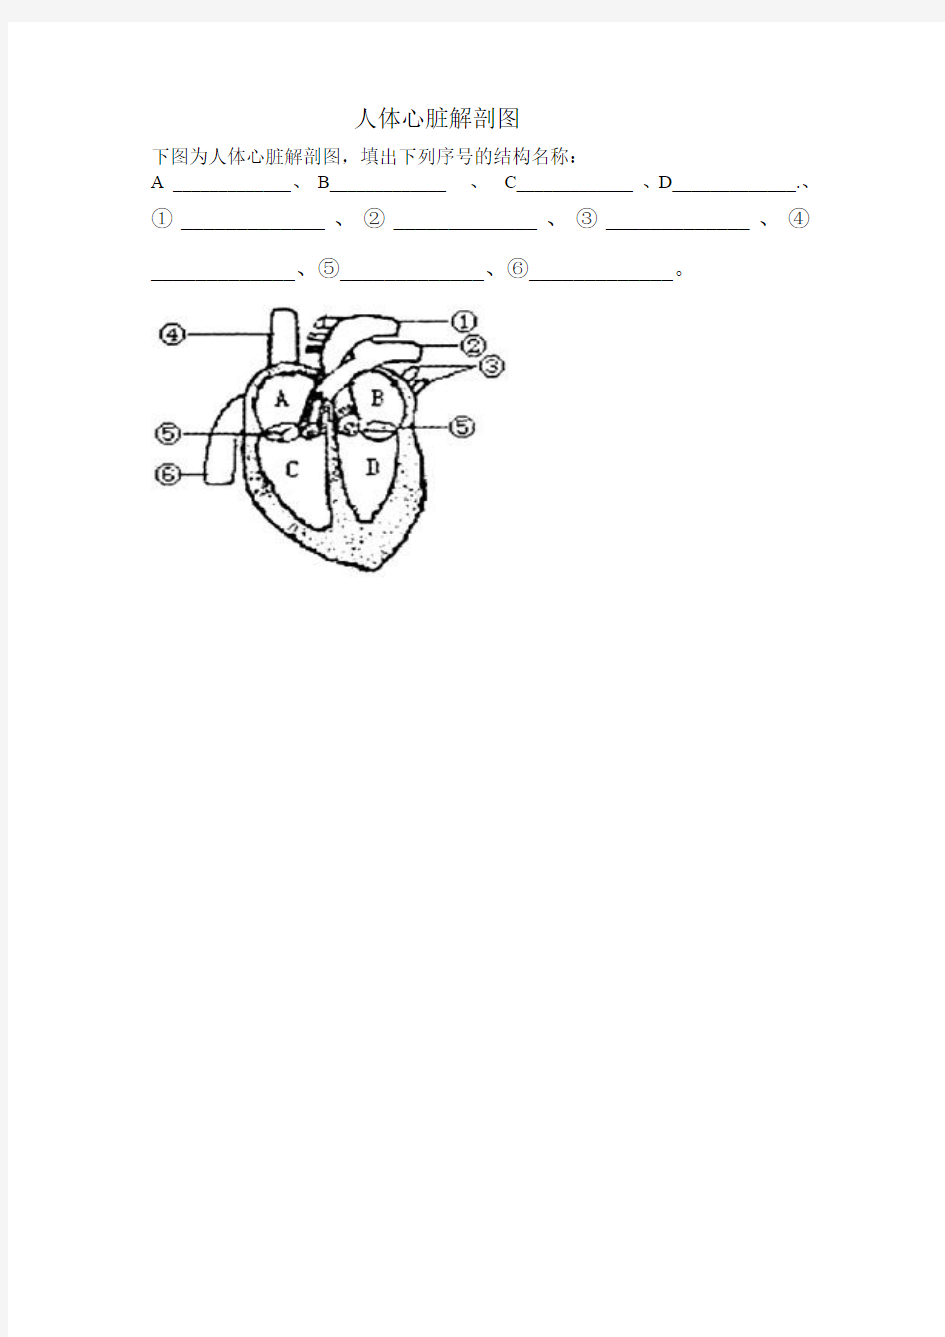 人体心脏解剖图